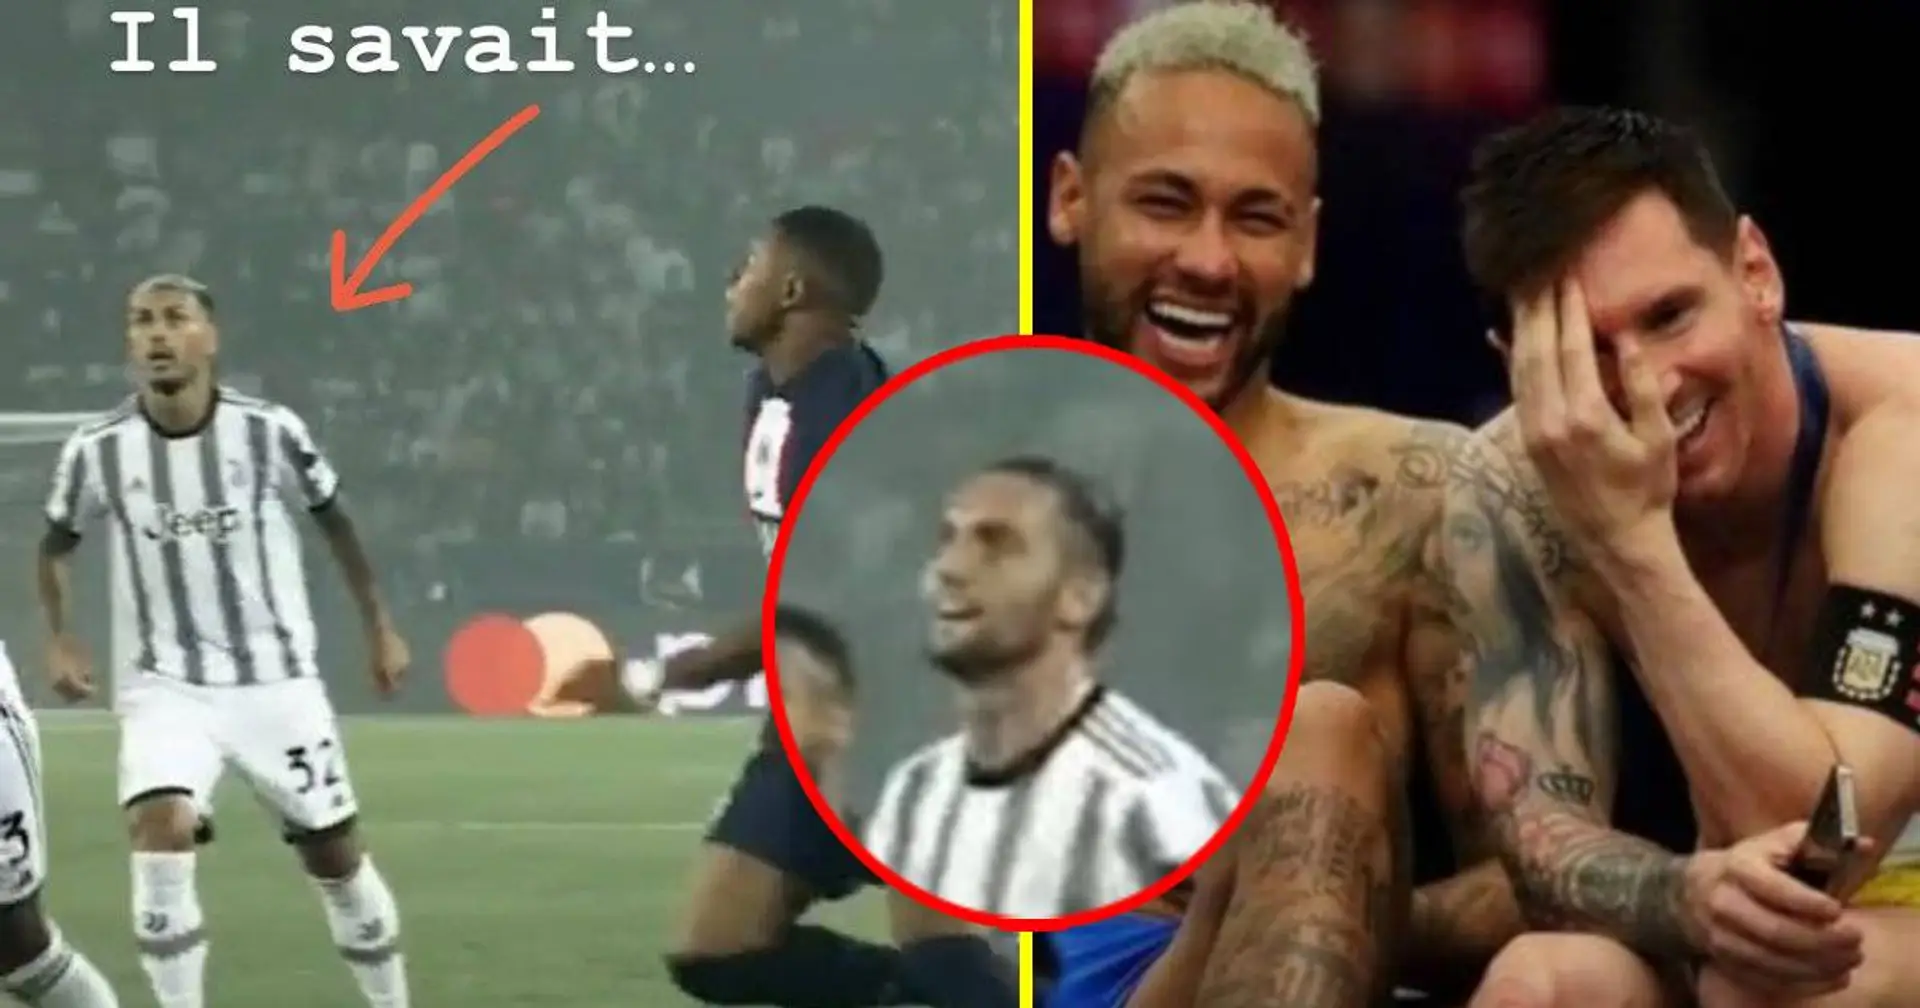 "Il savait", "il souriait": Un fan capte avec brio la réaction de Paredes & Rabiot au moment de la passe de génie de Neymar